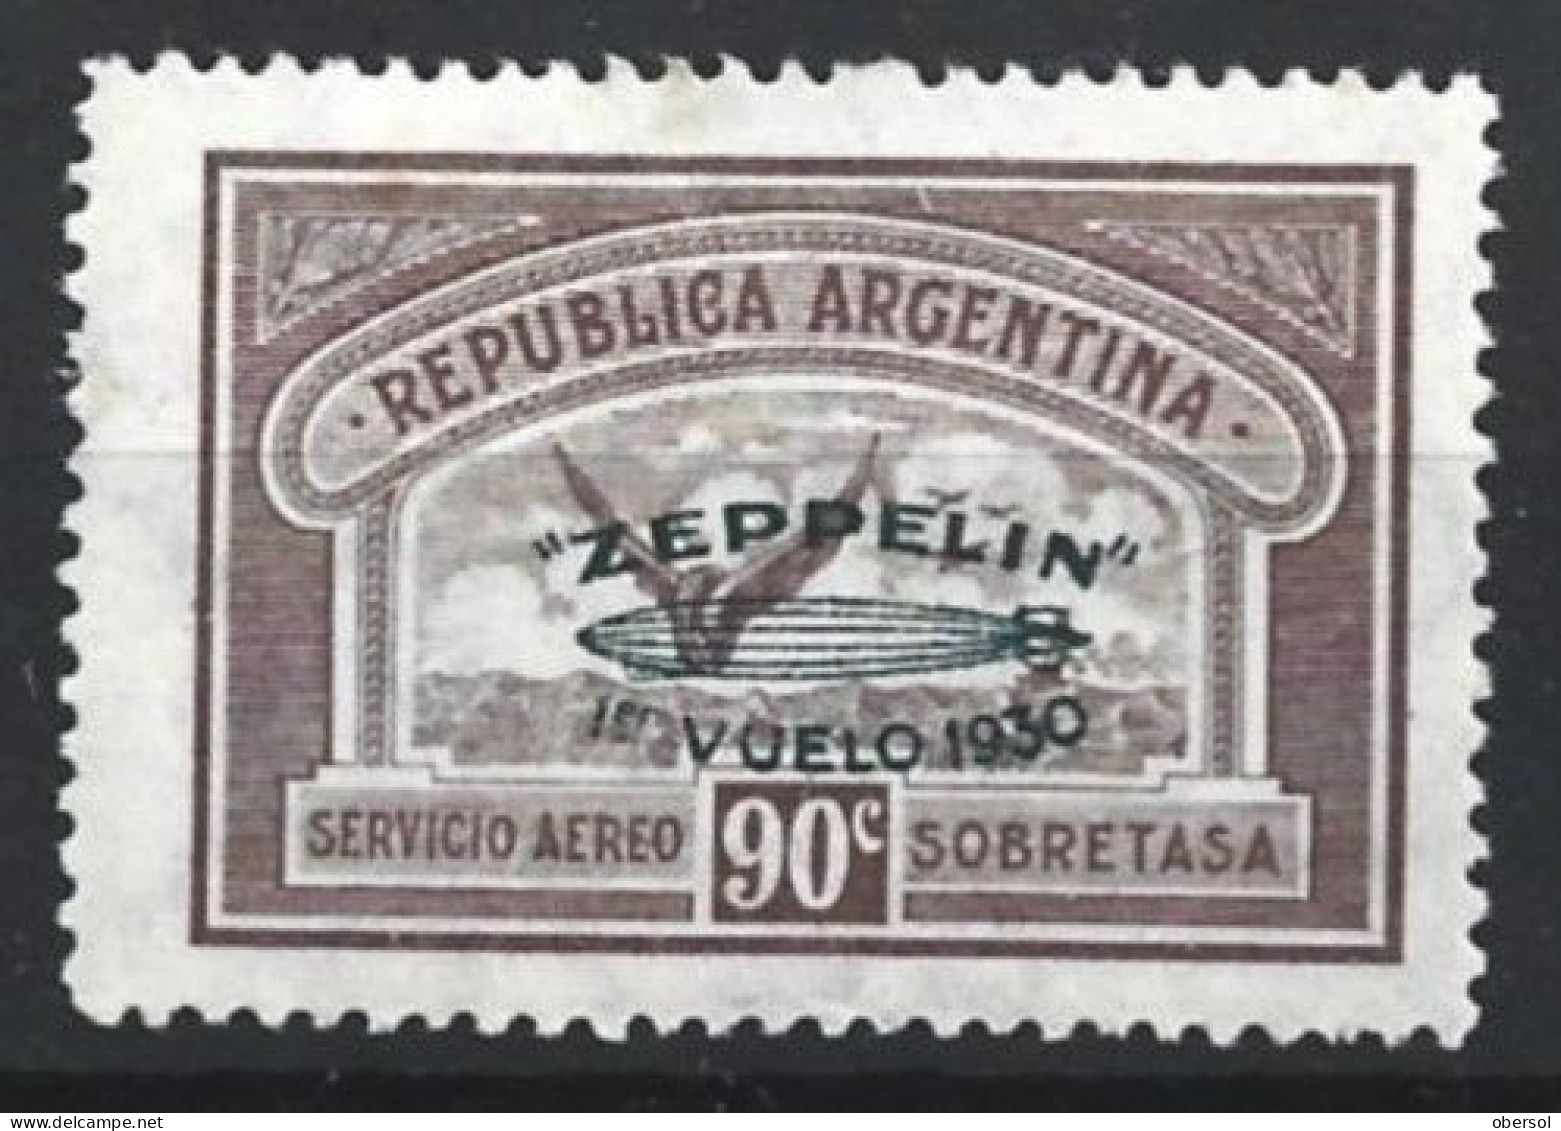 Argentina 1930 Zeppelin Green Overprint 90c MH Stamp (2) - Ongebruikt